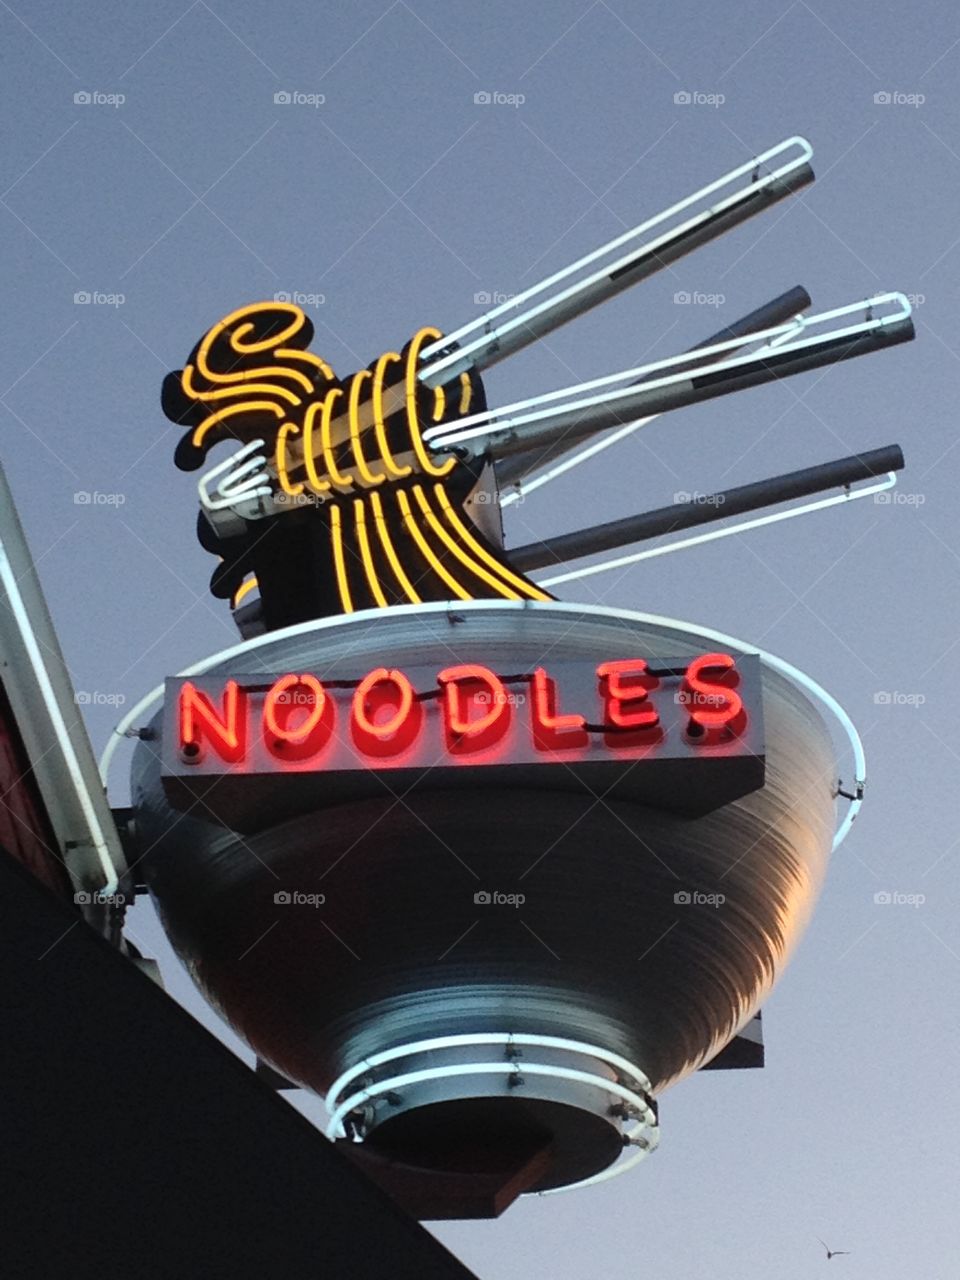 Noodle restaurant.